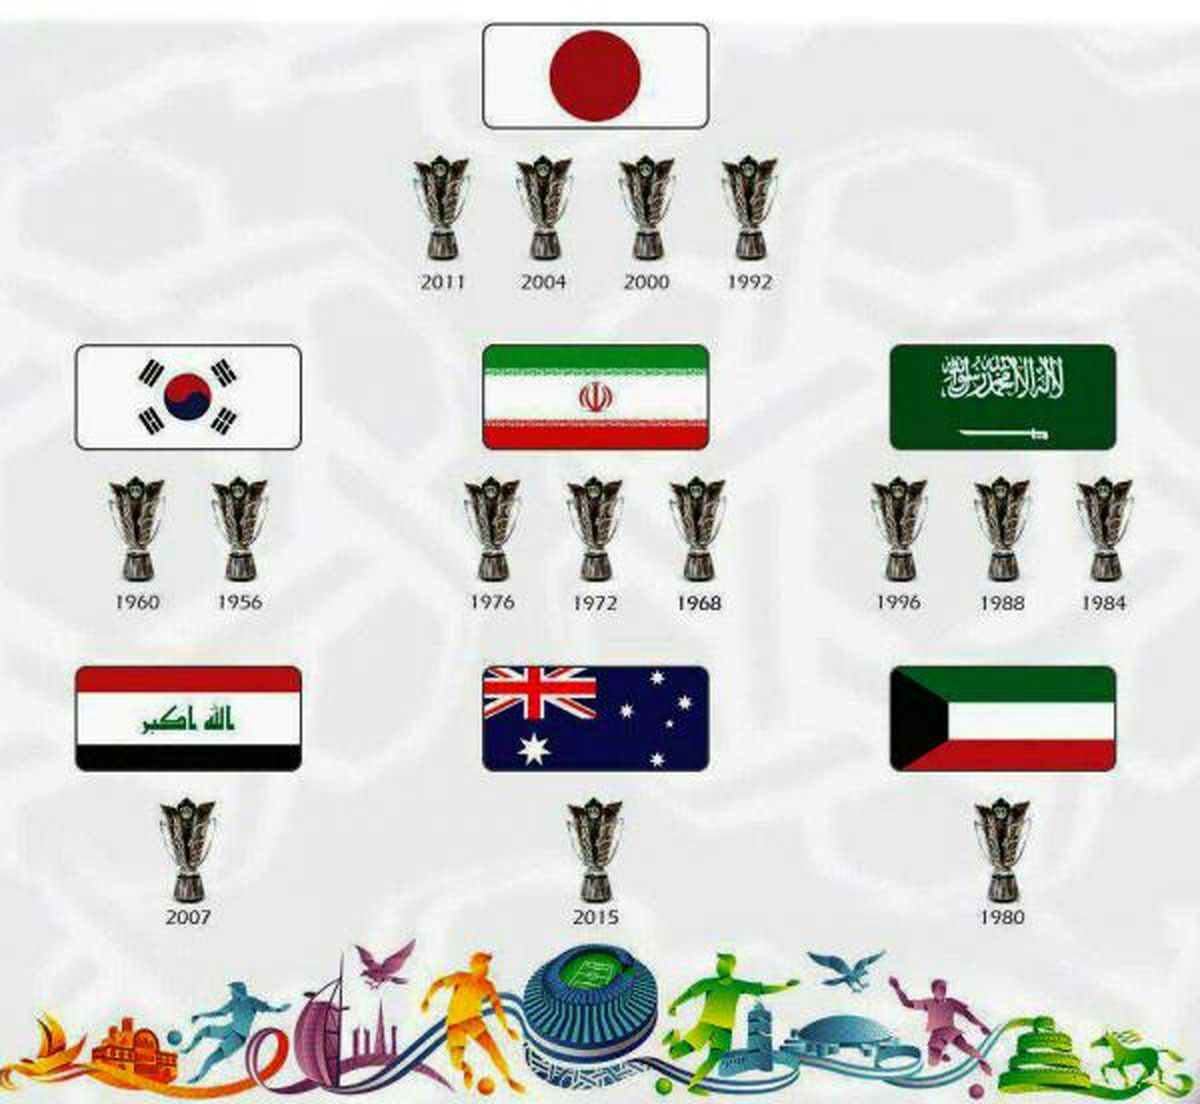 جام ۲۰۱۹ به رنگ سرخابی!/ پیش بینی قهرمانی جام ملت های آسیا از زبان بازیکنان پرسپولیس و استقلال